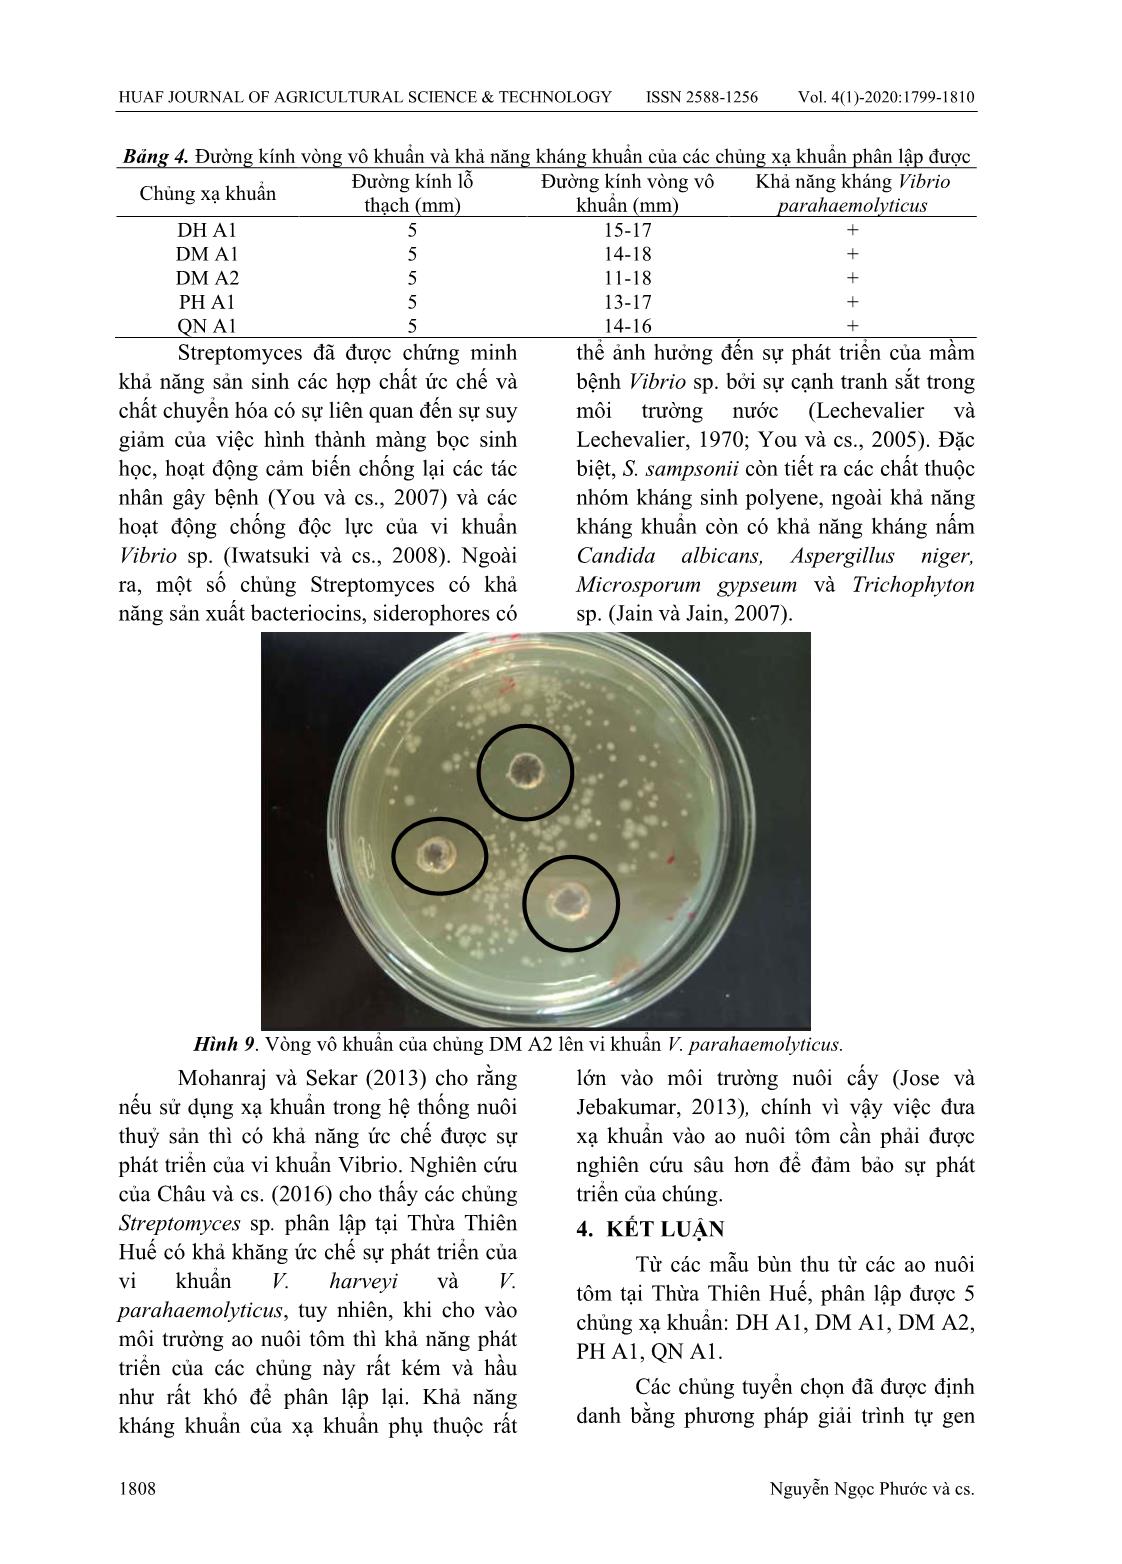 Nghiên cứu một số đặc tính sinh hoá của các chủng xạ khuẩn phân lập được từ các ao nuôi tôm thâm canh tại Thừa Thiên Huế trang 10